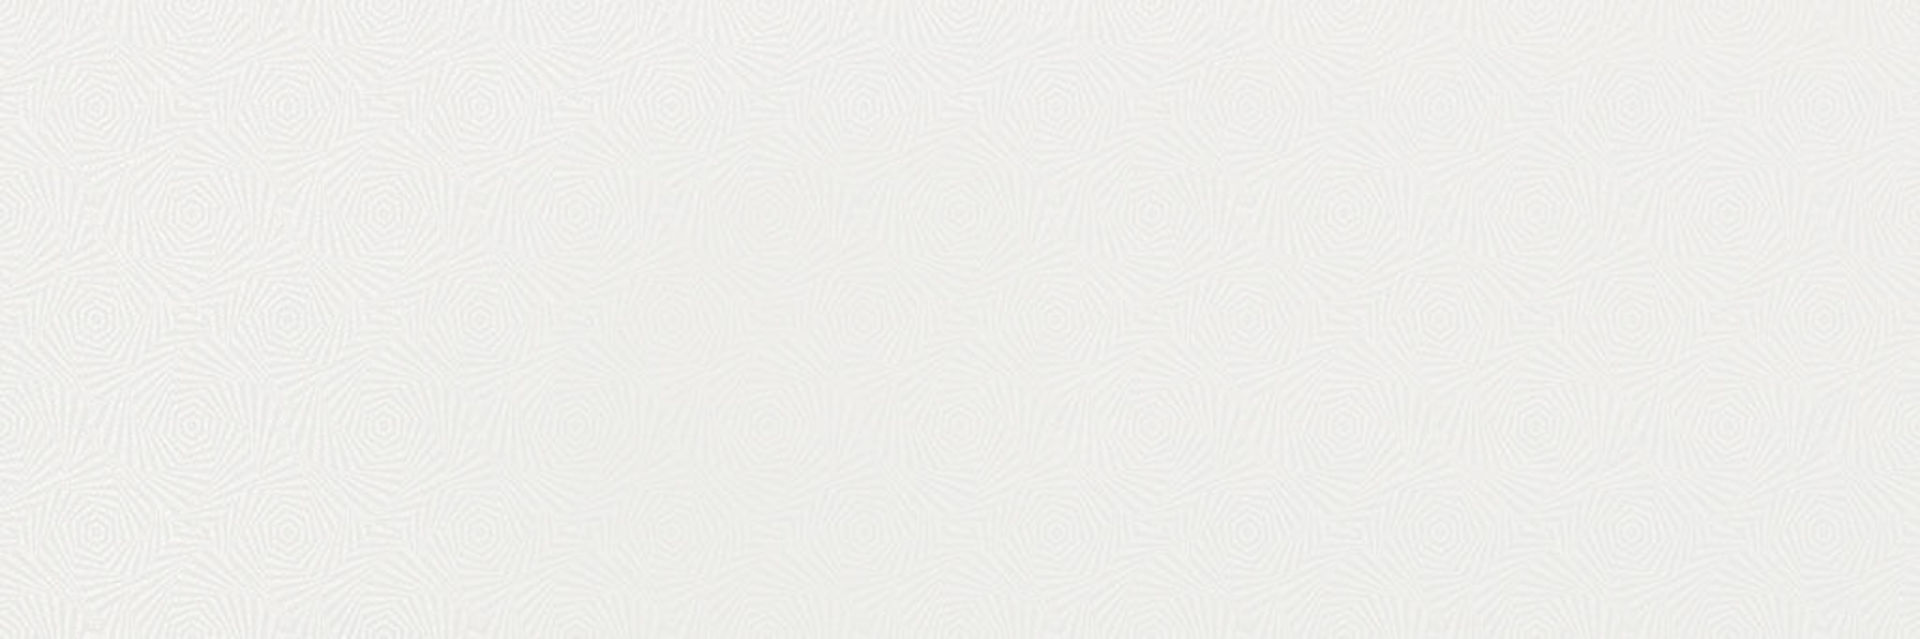 Керамическая плитка CROMATICA WHITE BRILLO 25*75 / коллекция CROMATICA / производитель CIFRE CERAMICA / страна Испания